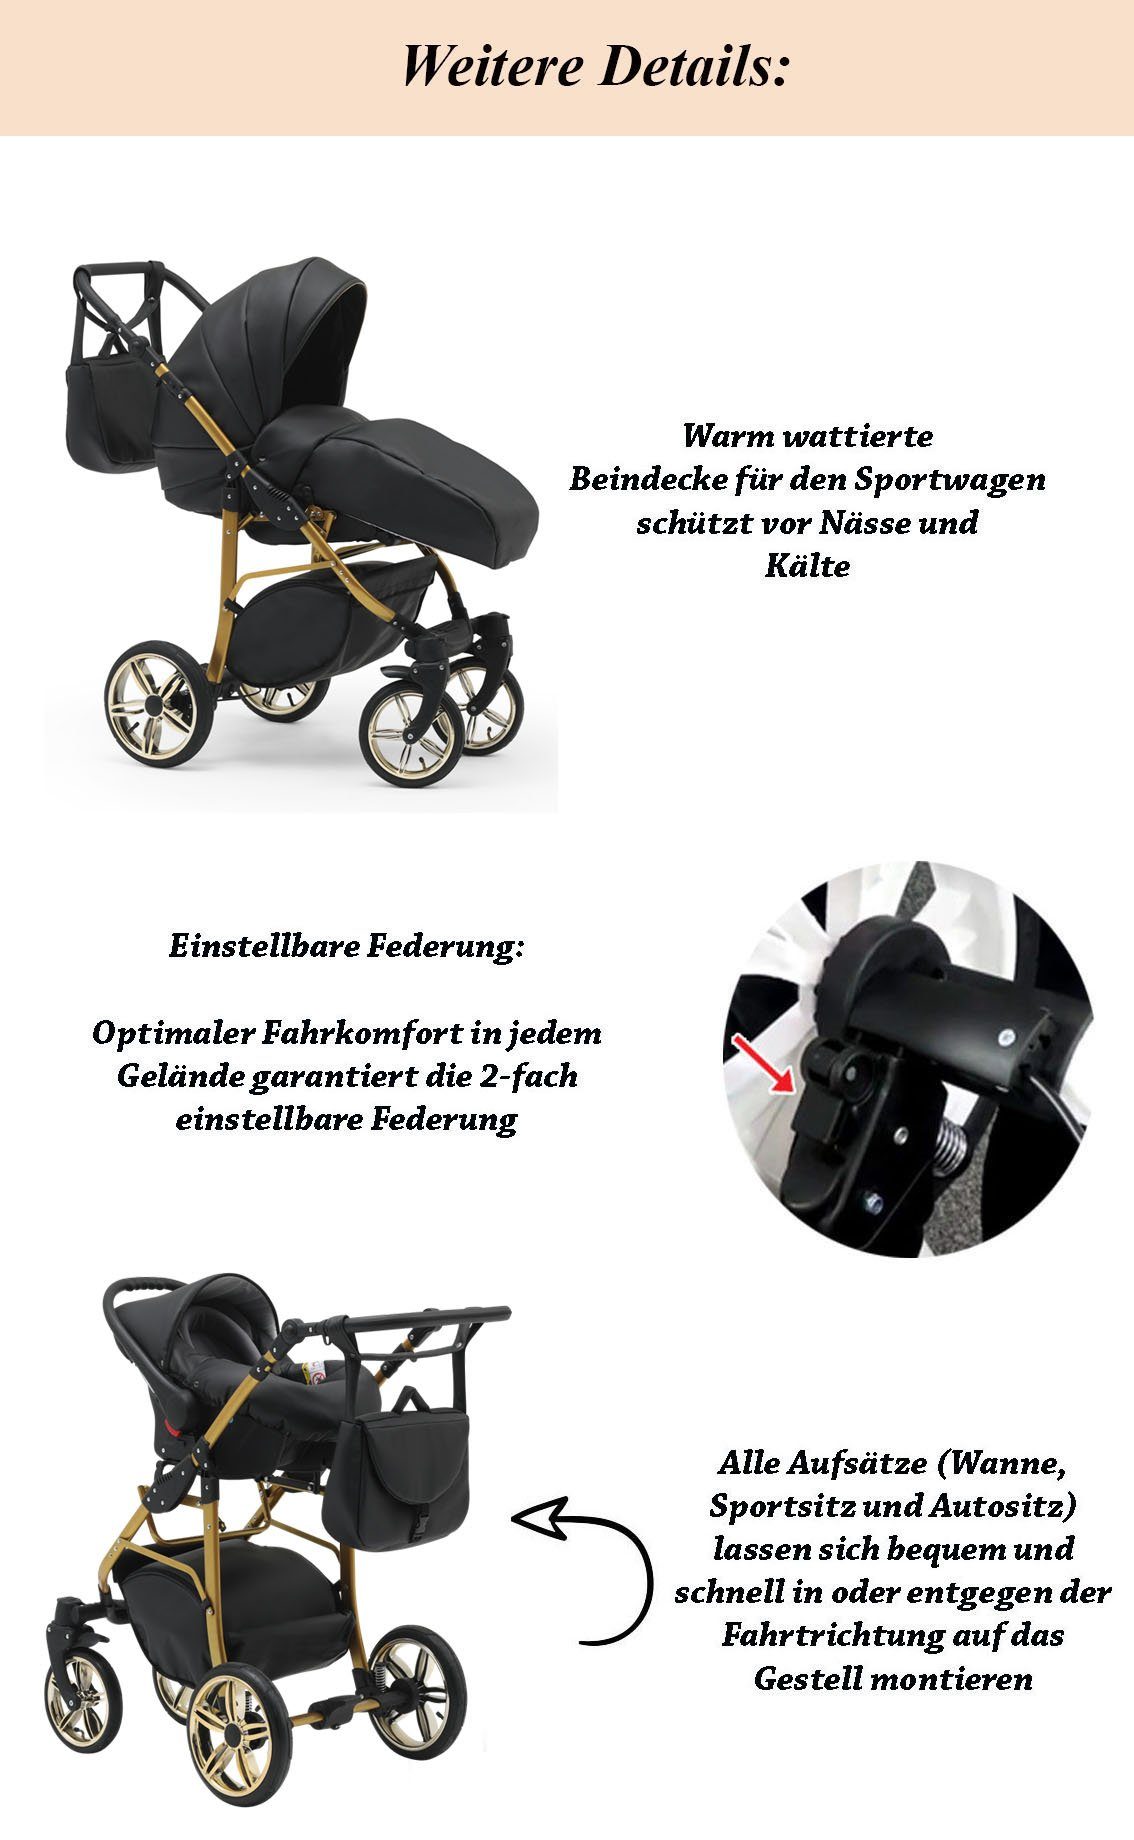 Cosmo - - 3 46 Kombi-Kinderwagen 16 babies-on-wheels Teile Farben in in 1 Beige-Schwarz Gold Kinderwagen-Set ECO